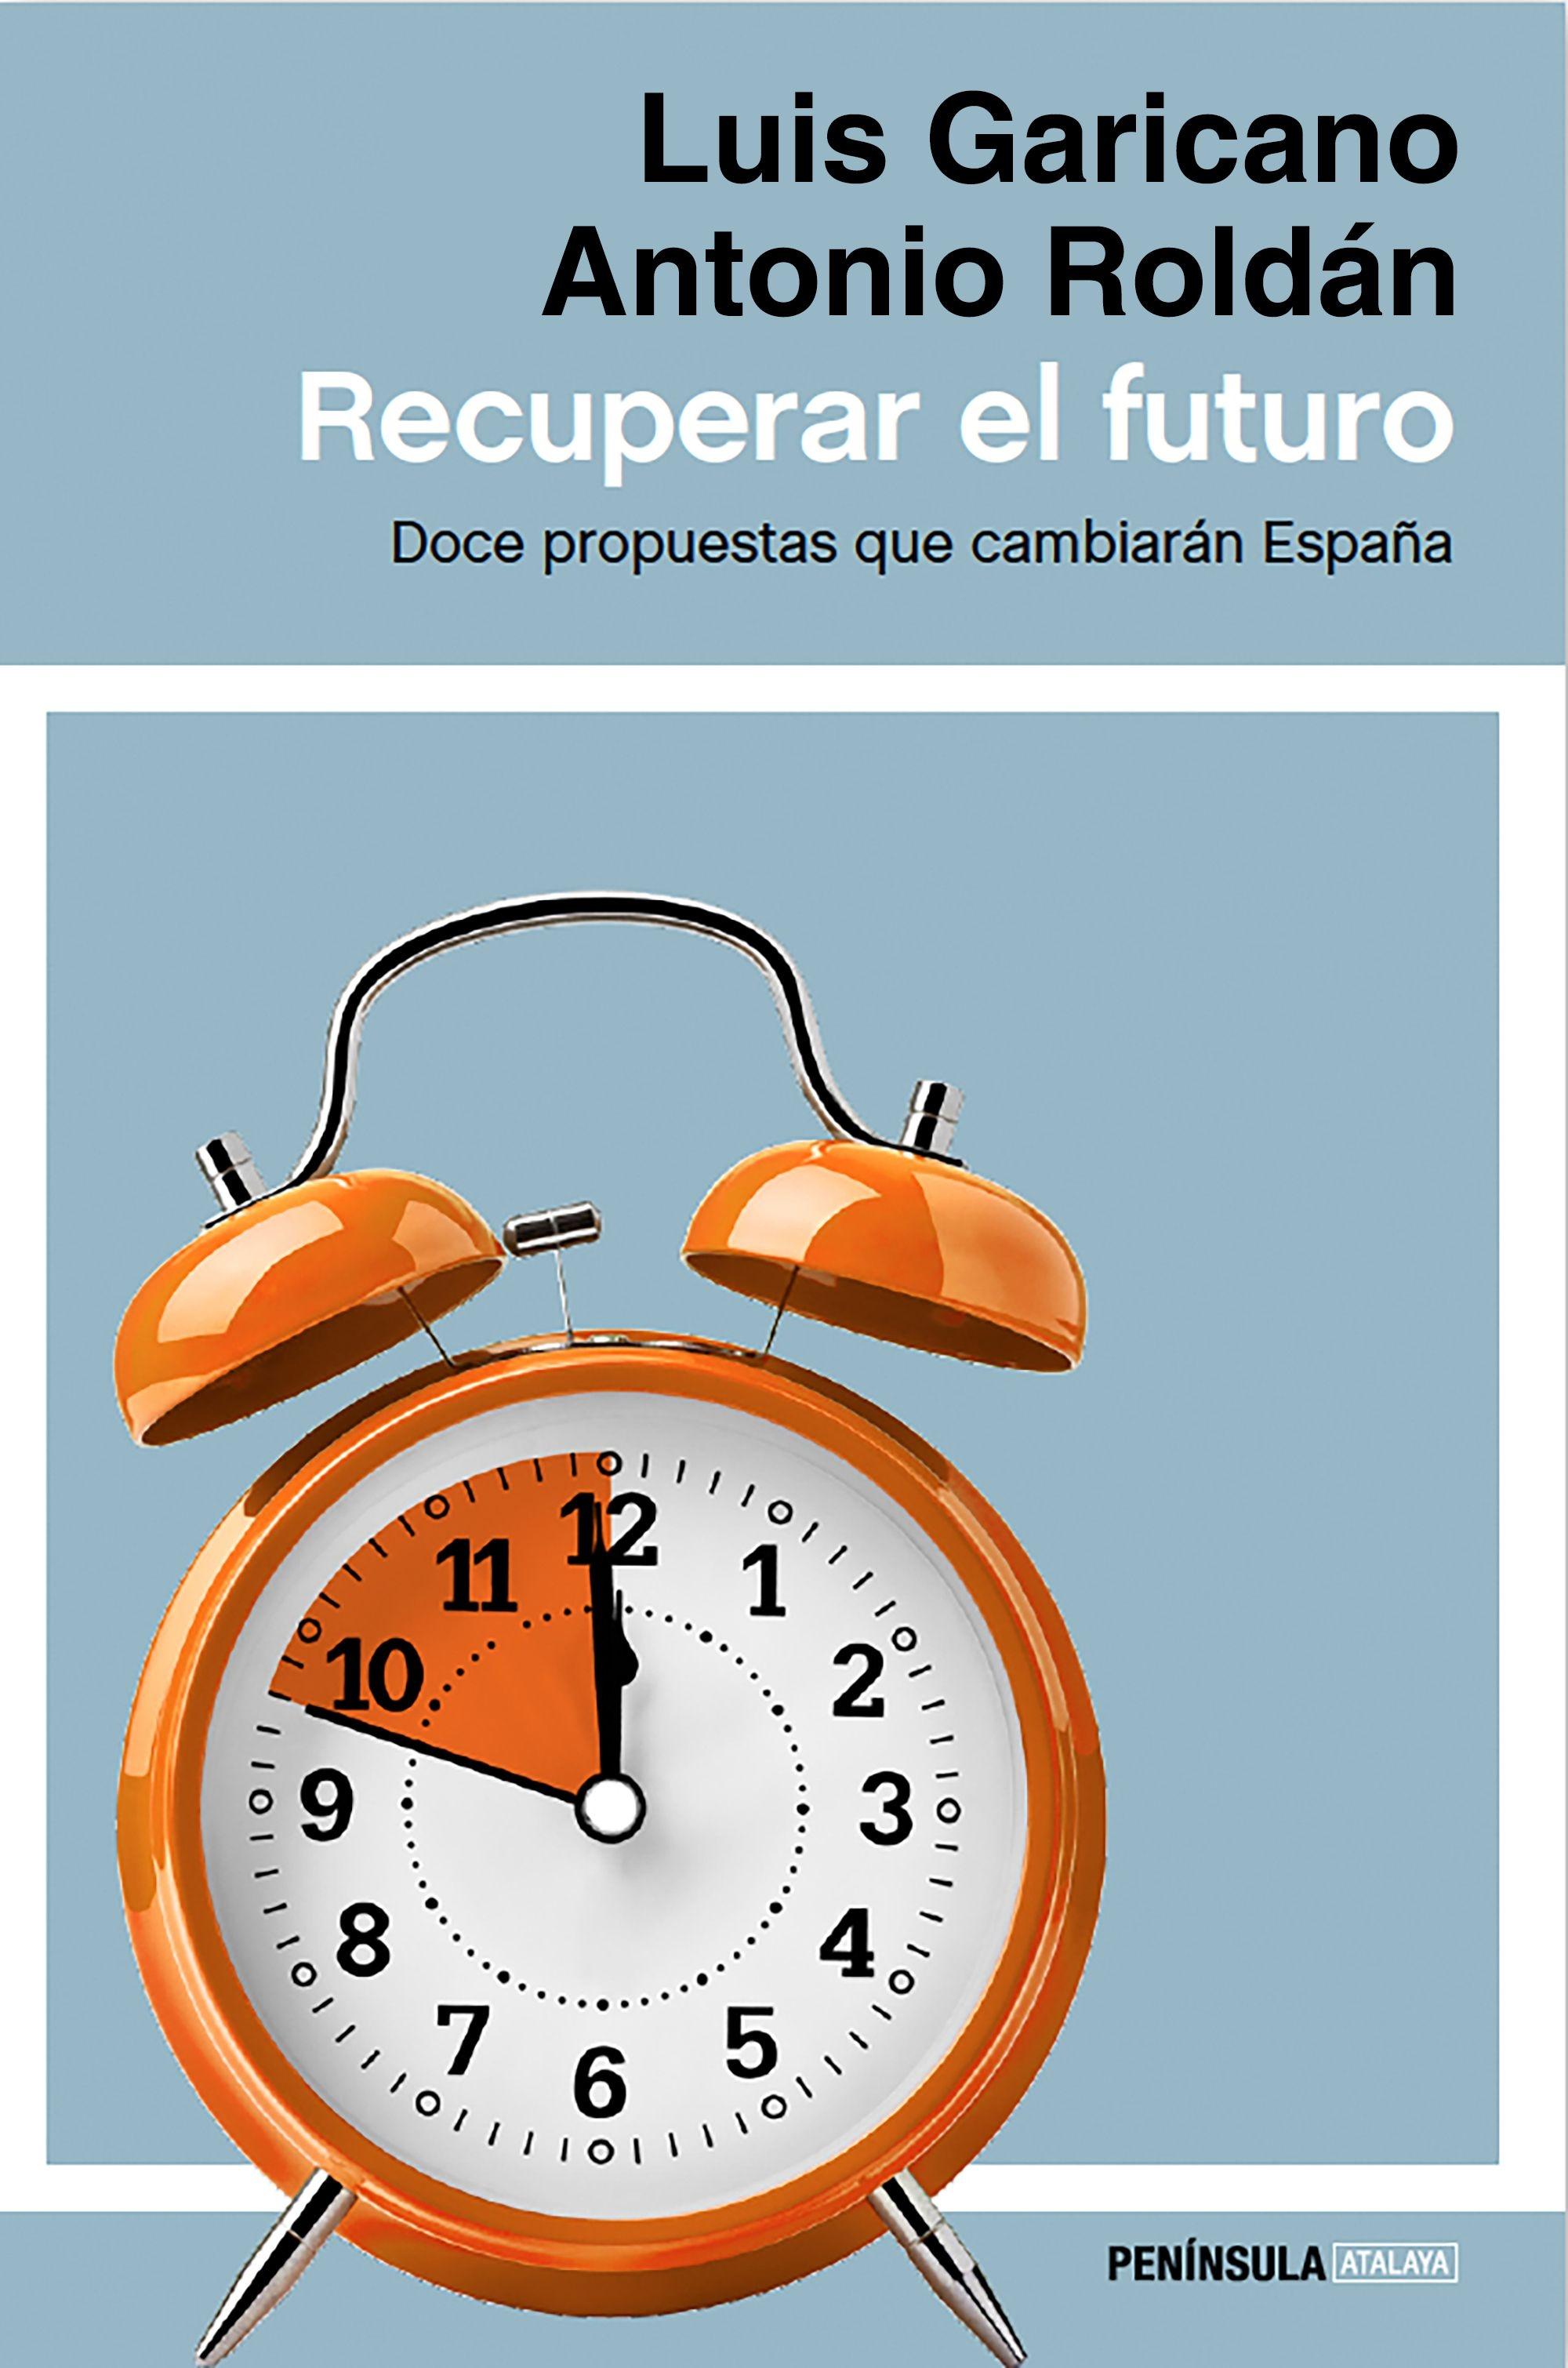 Recuperar el futuro "Doce propuestas que cambiarán España". 